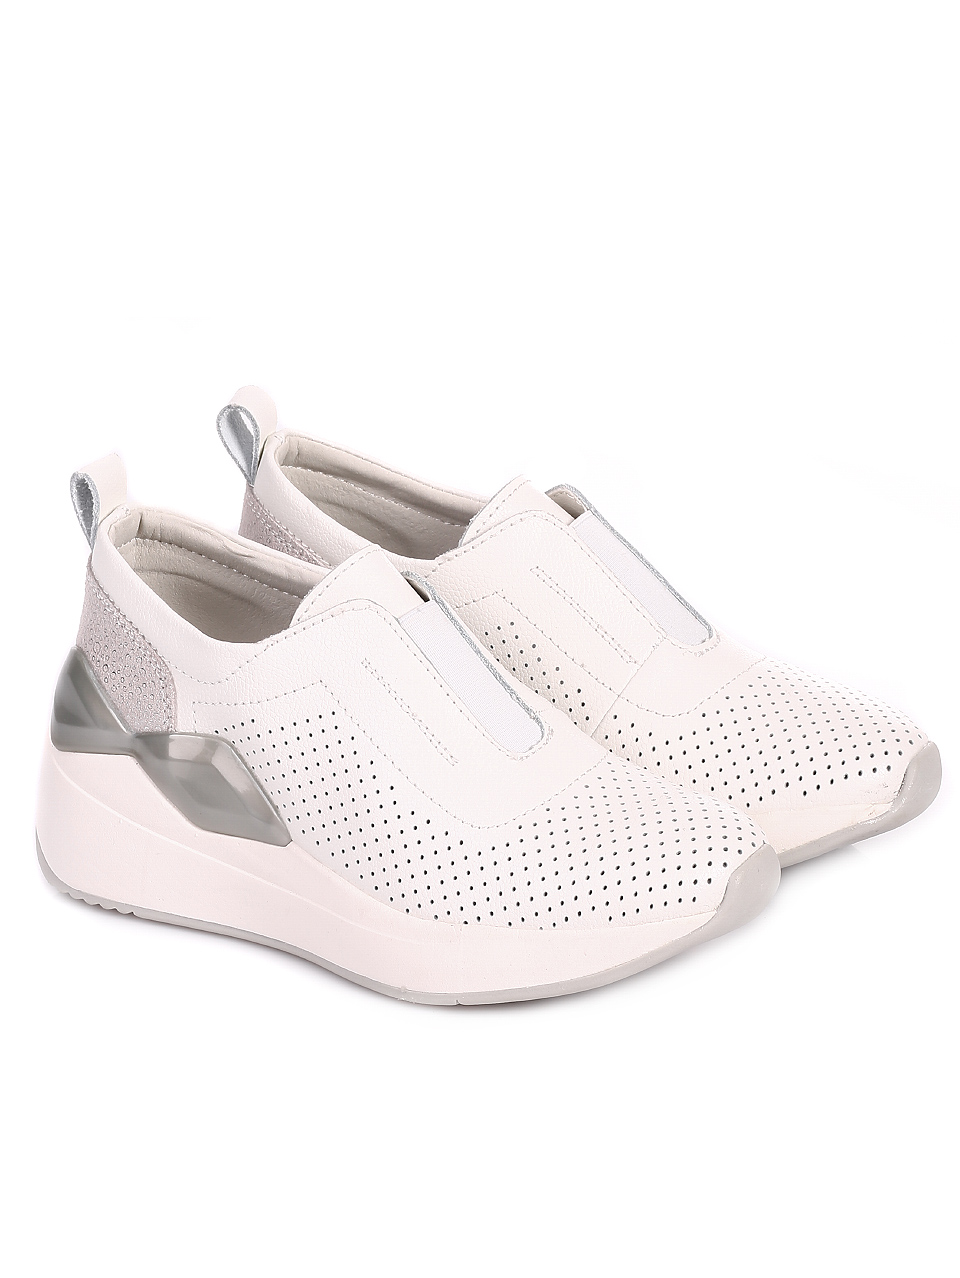 Ежедневни дамски обувки от естествена кожа 3AF-20142 white/silver